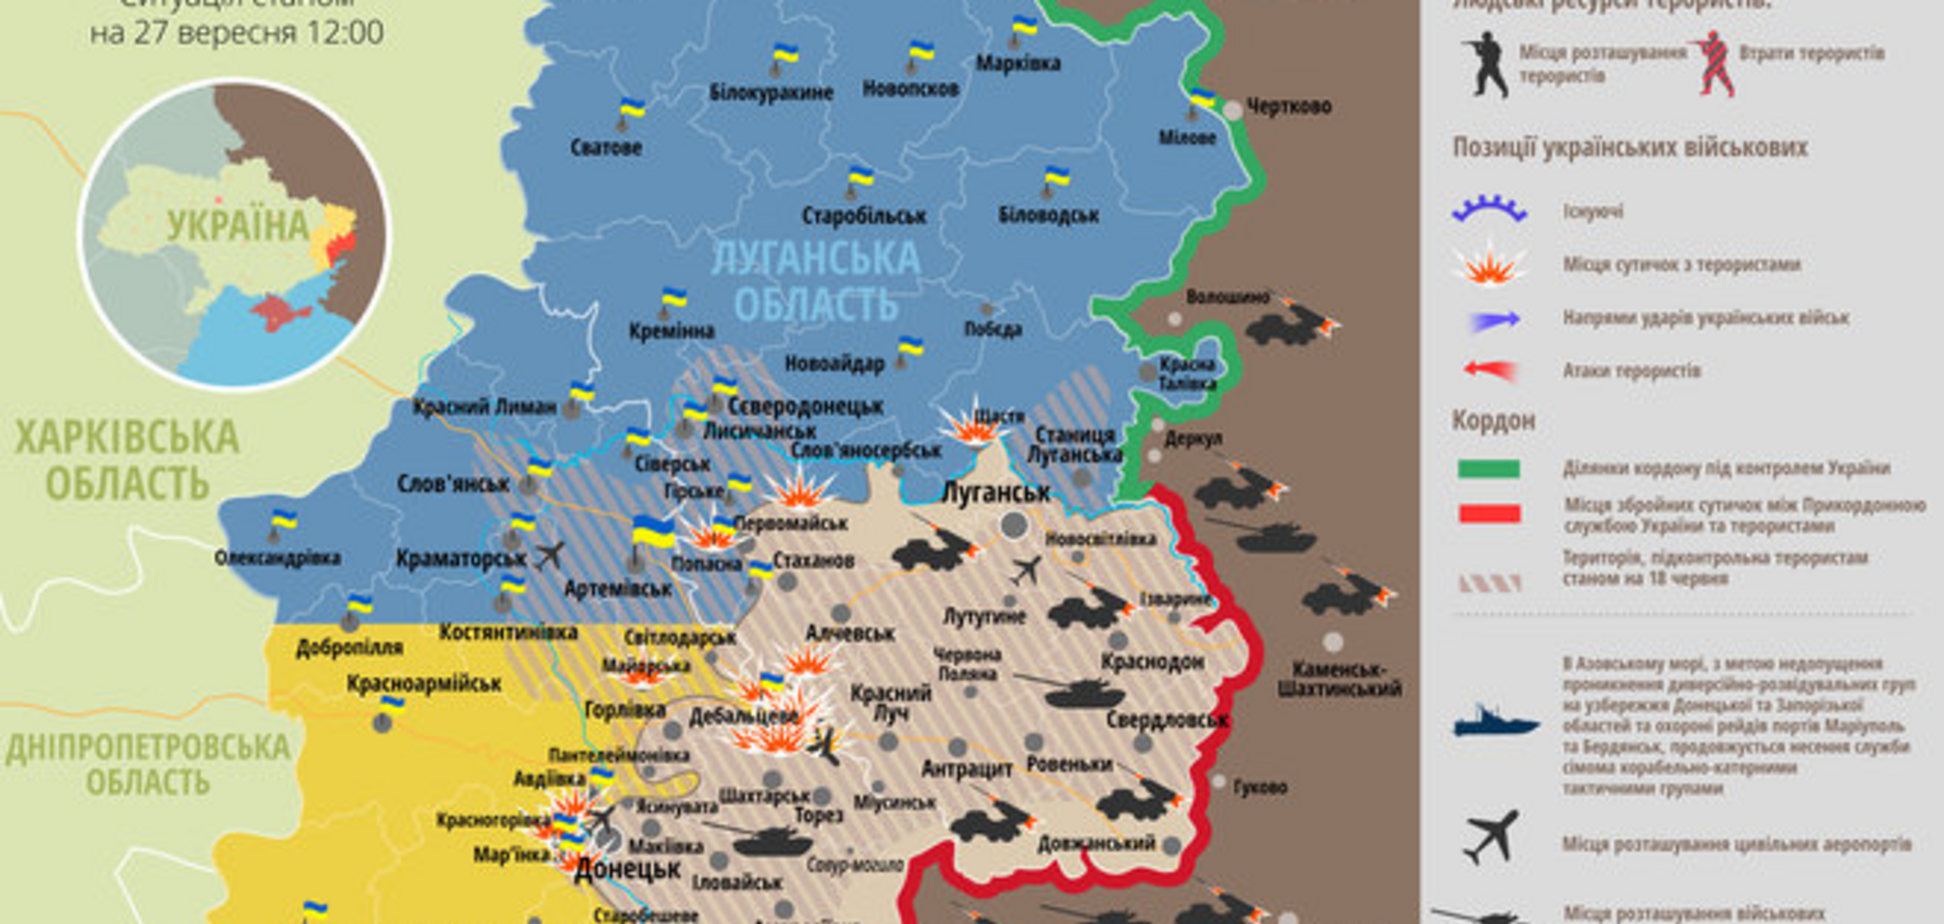 Терористи атакують українські блокпости: мапа АТО